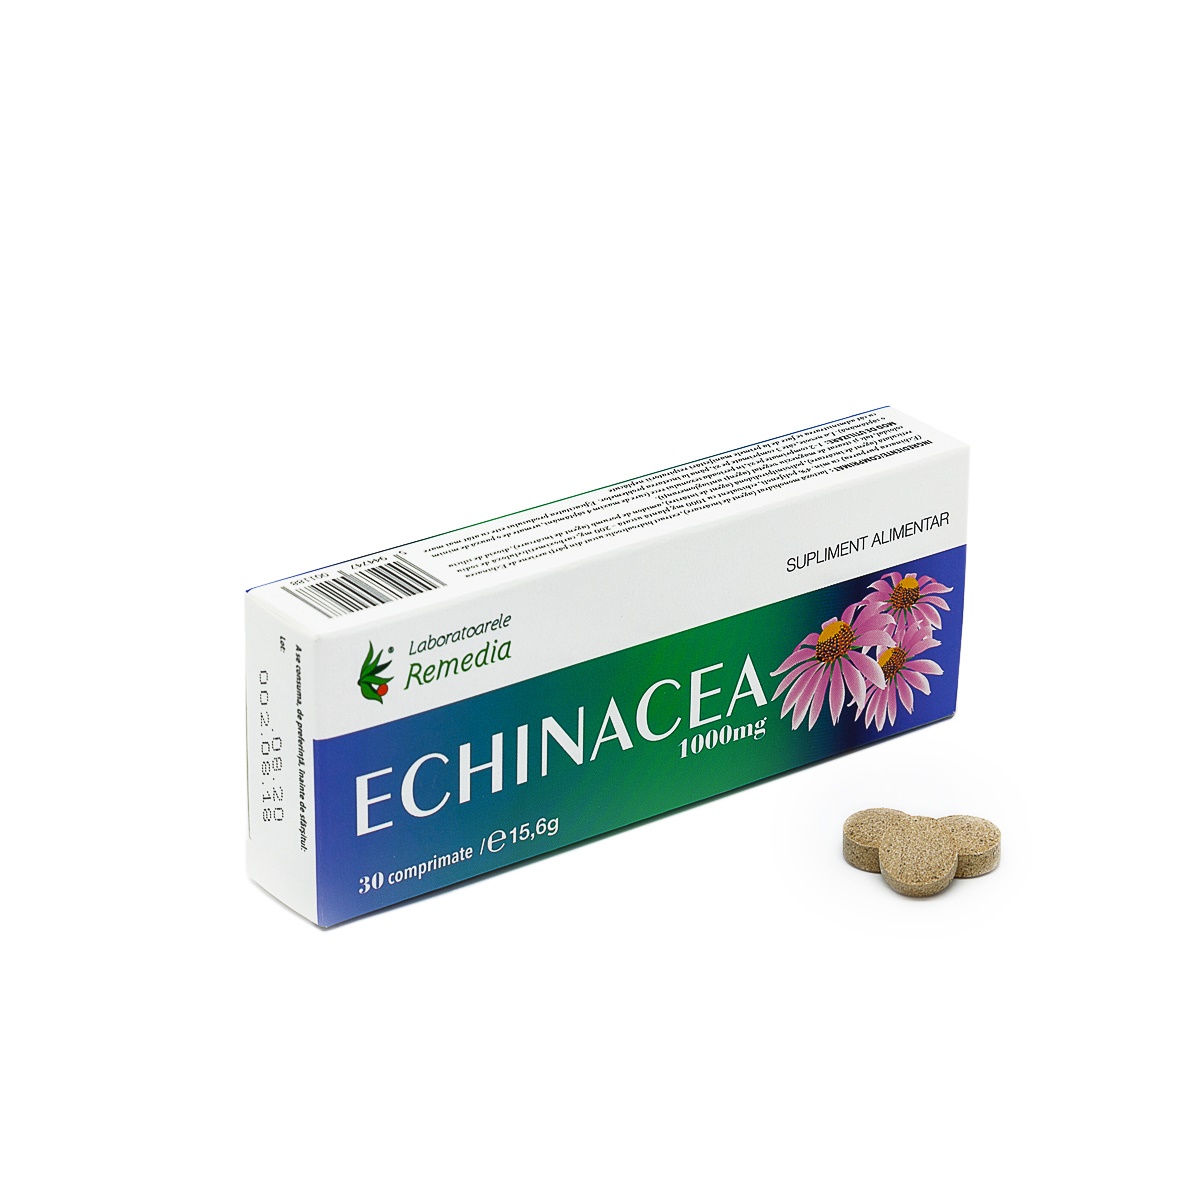 Imunitate - Echinacea 1000 mg, 30 comprimate, Remedia, farmaciamare.ro